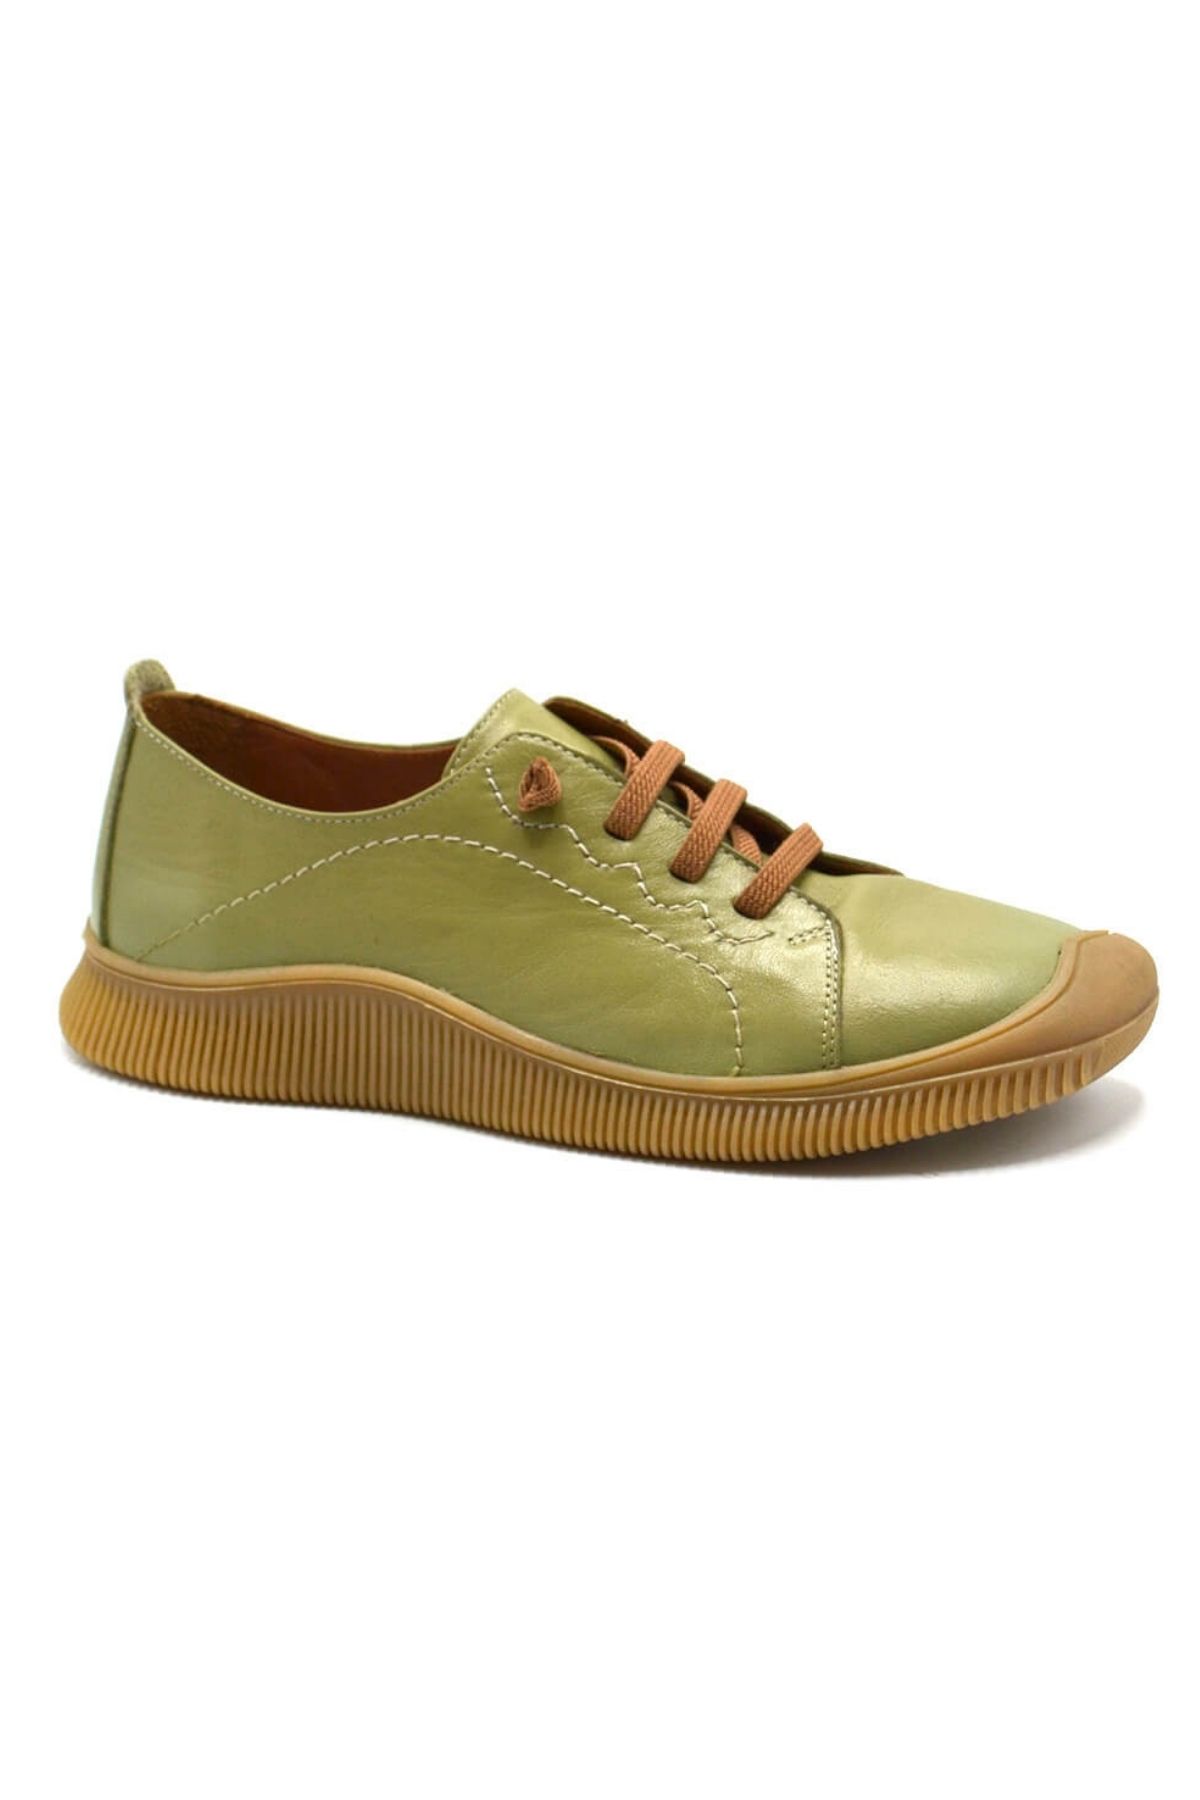 Kadın Comfort Deri Ayakkabı Yeşil 2413504Y - Thumbnail